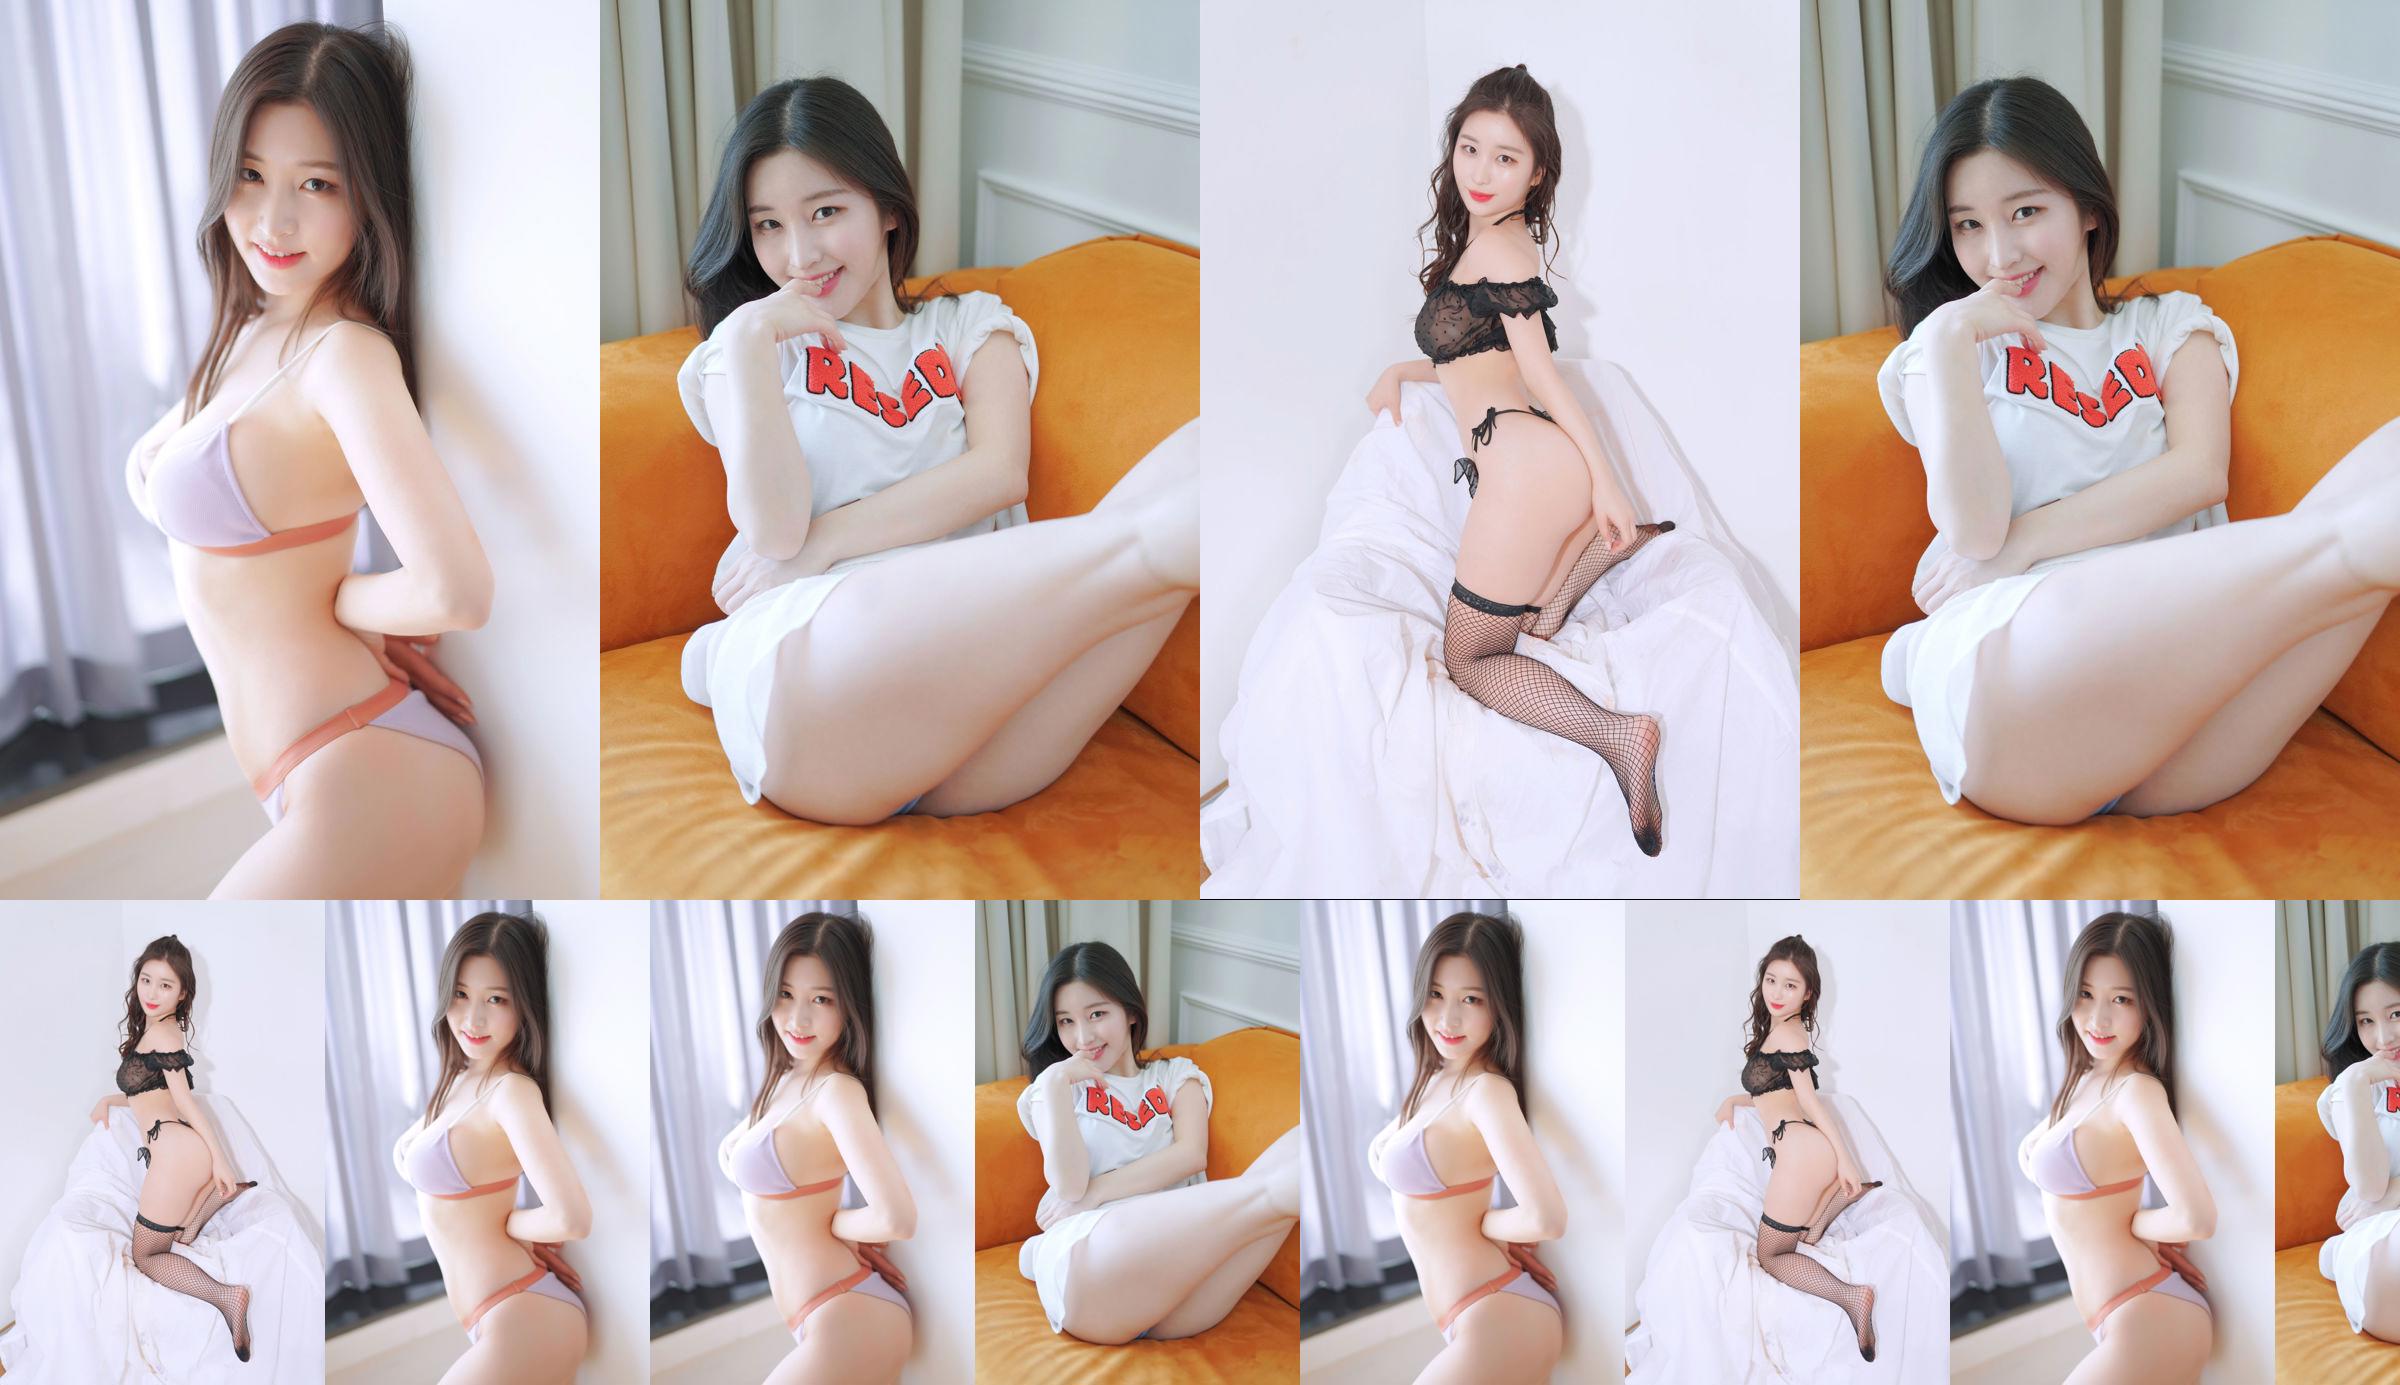 [Pink Forest] - Najung Vol.1 Sunny Side - Kim Na Jung No.95efcb Page 1